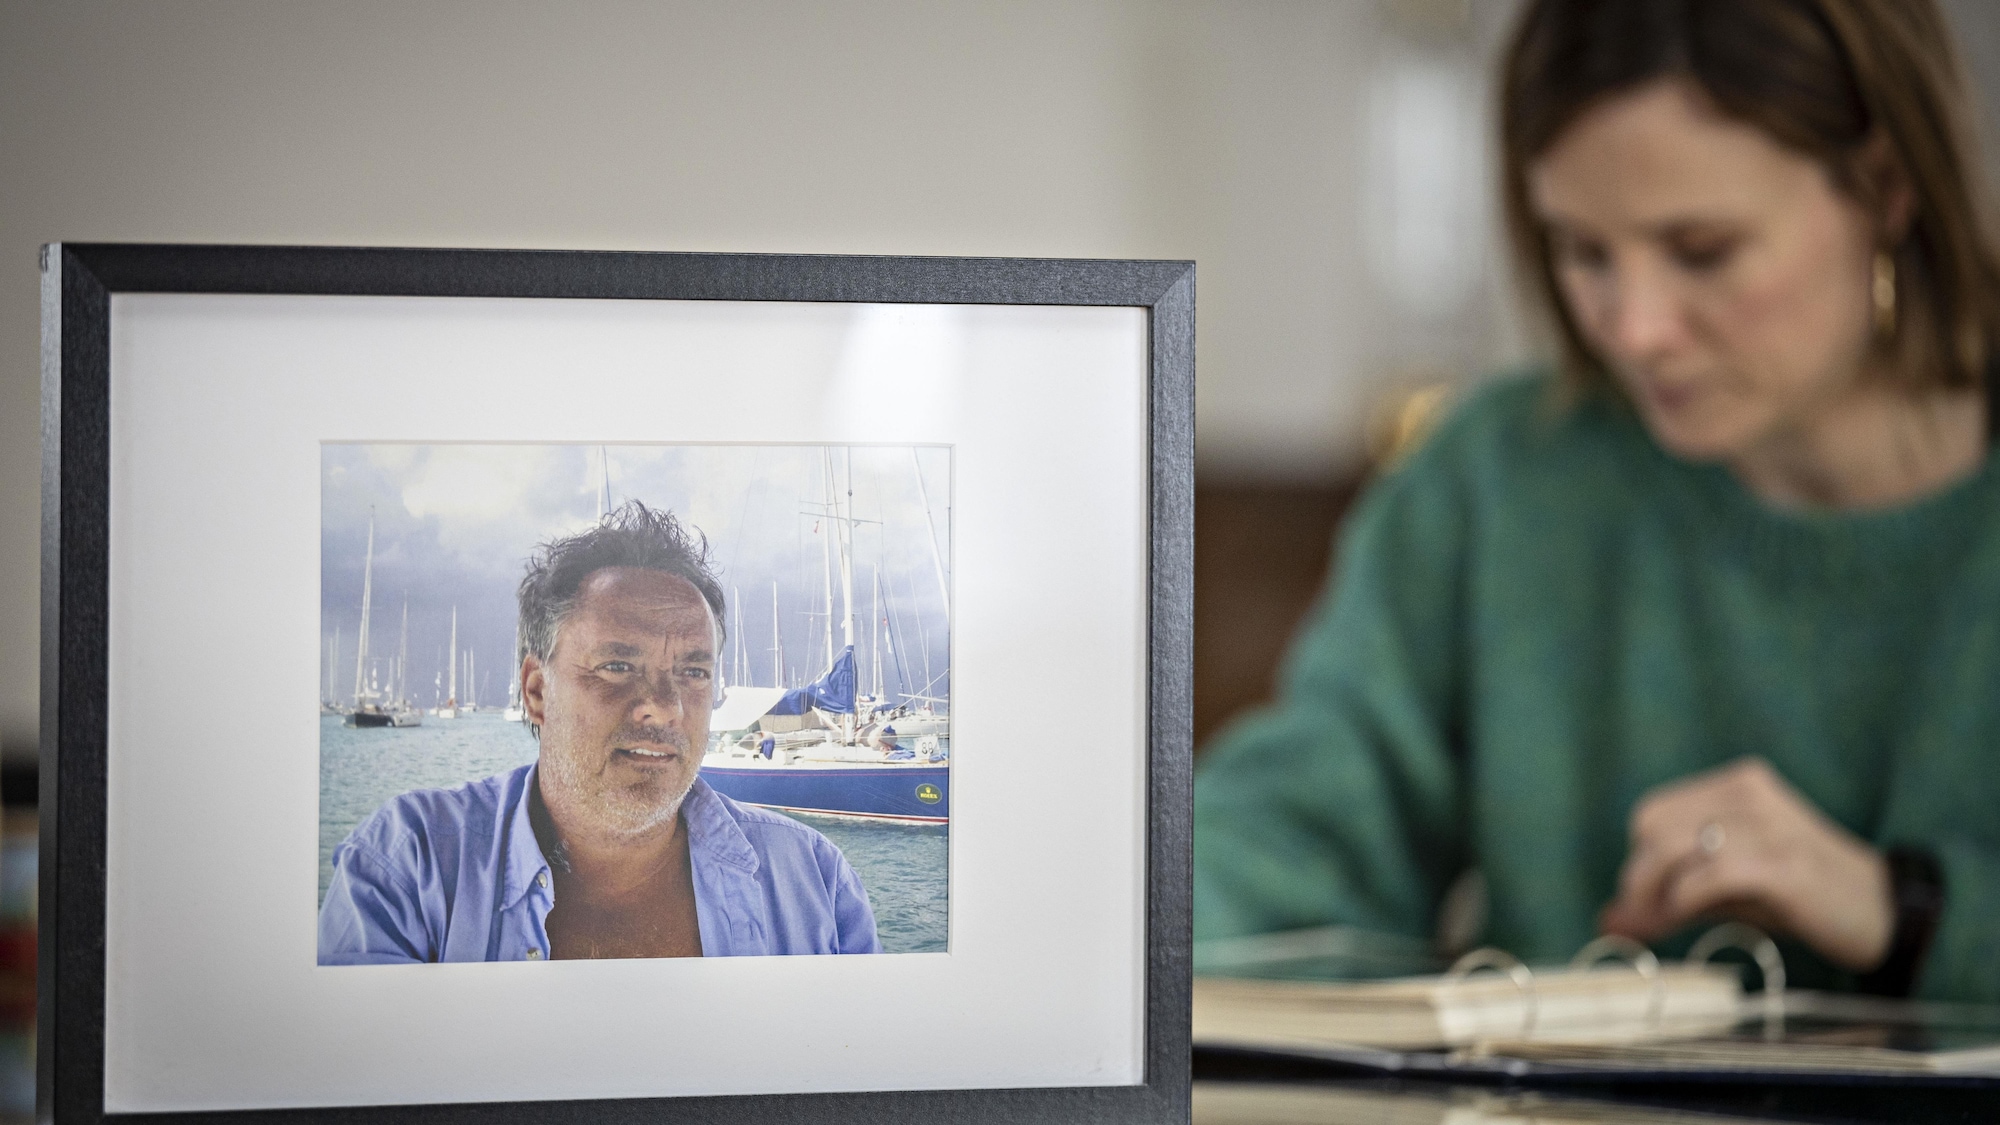 Une femme regarde un album de photos derrière un cadre montrant la photo d'un homme.